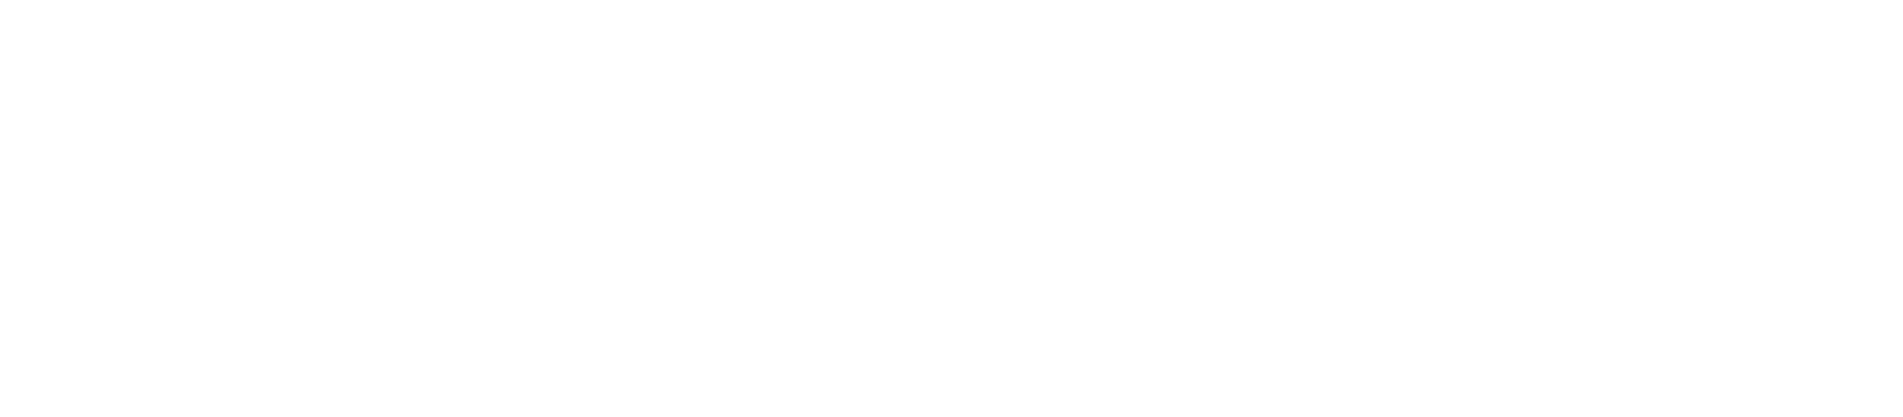 logo-oxygem-sans-baseline-png.png